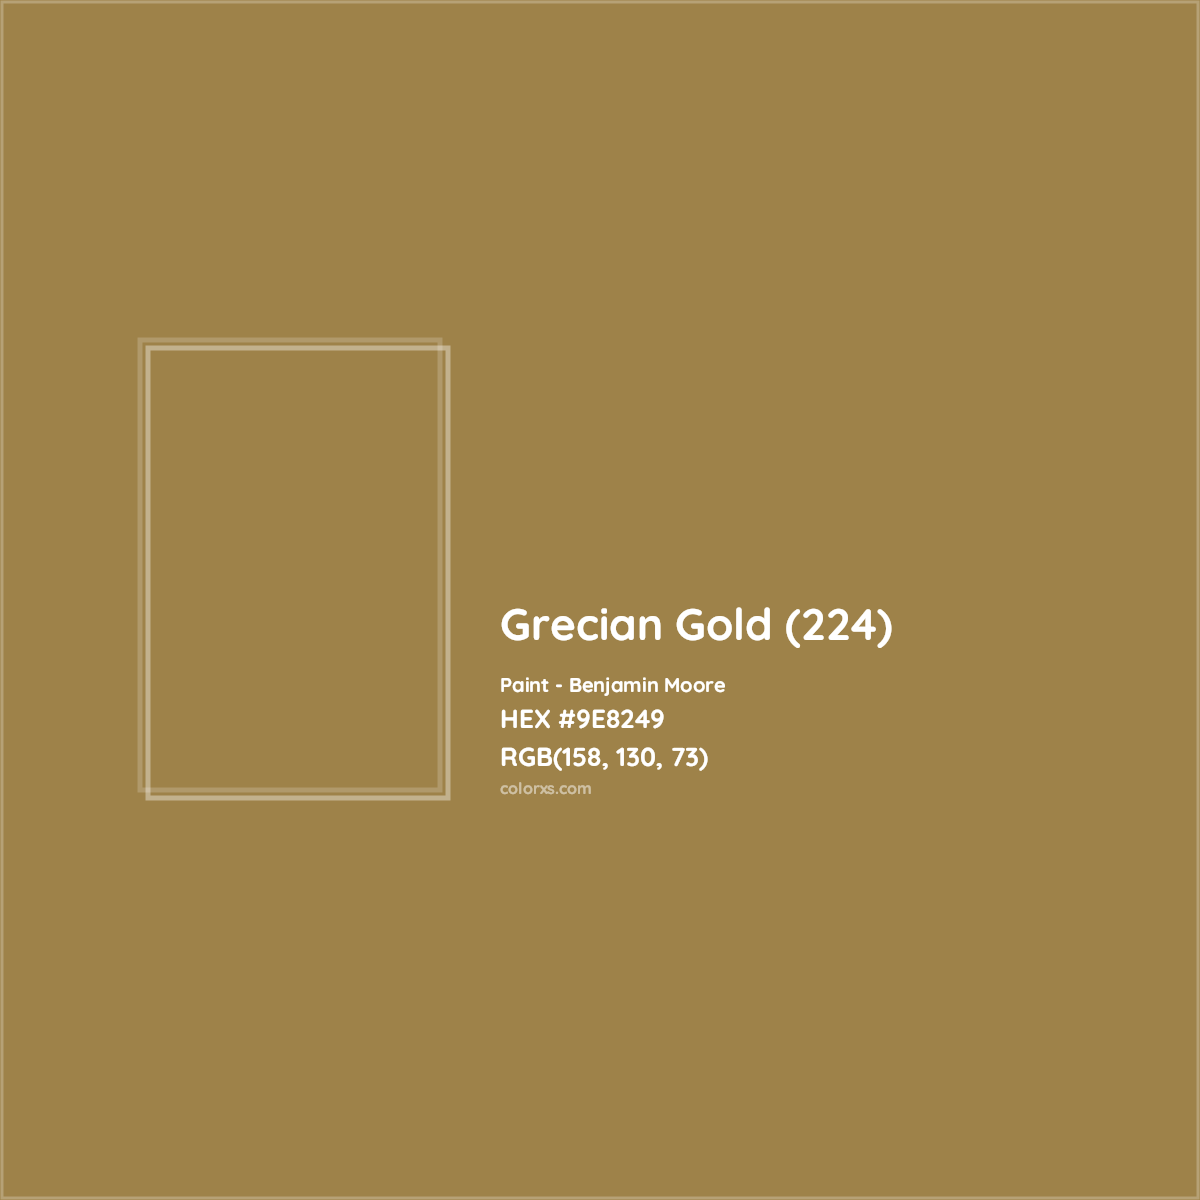 HEX #9E8249 Grecian Gold (224) Paint Benjamin Moore - Color Code